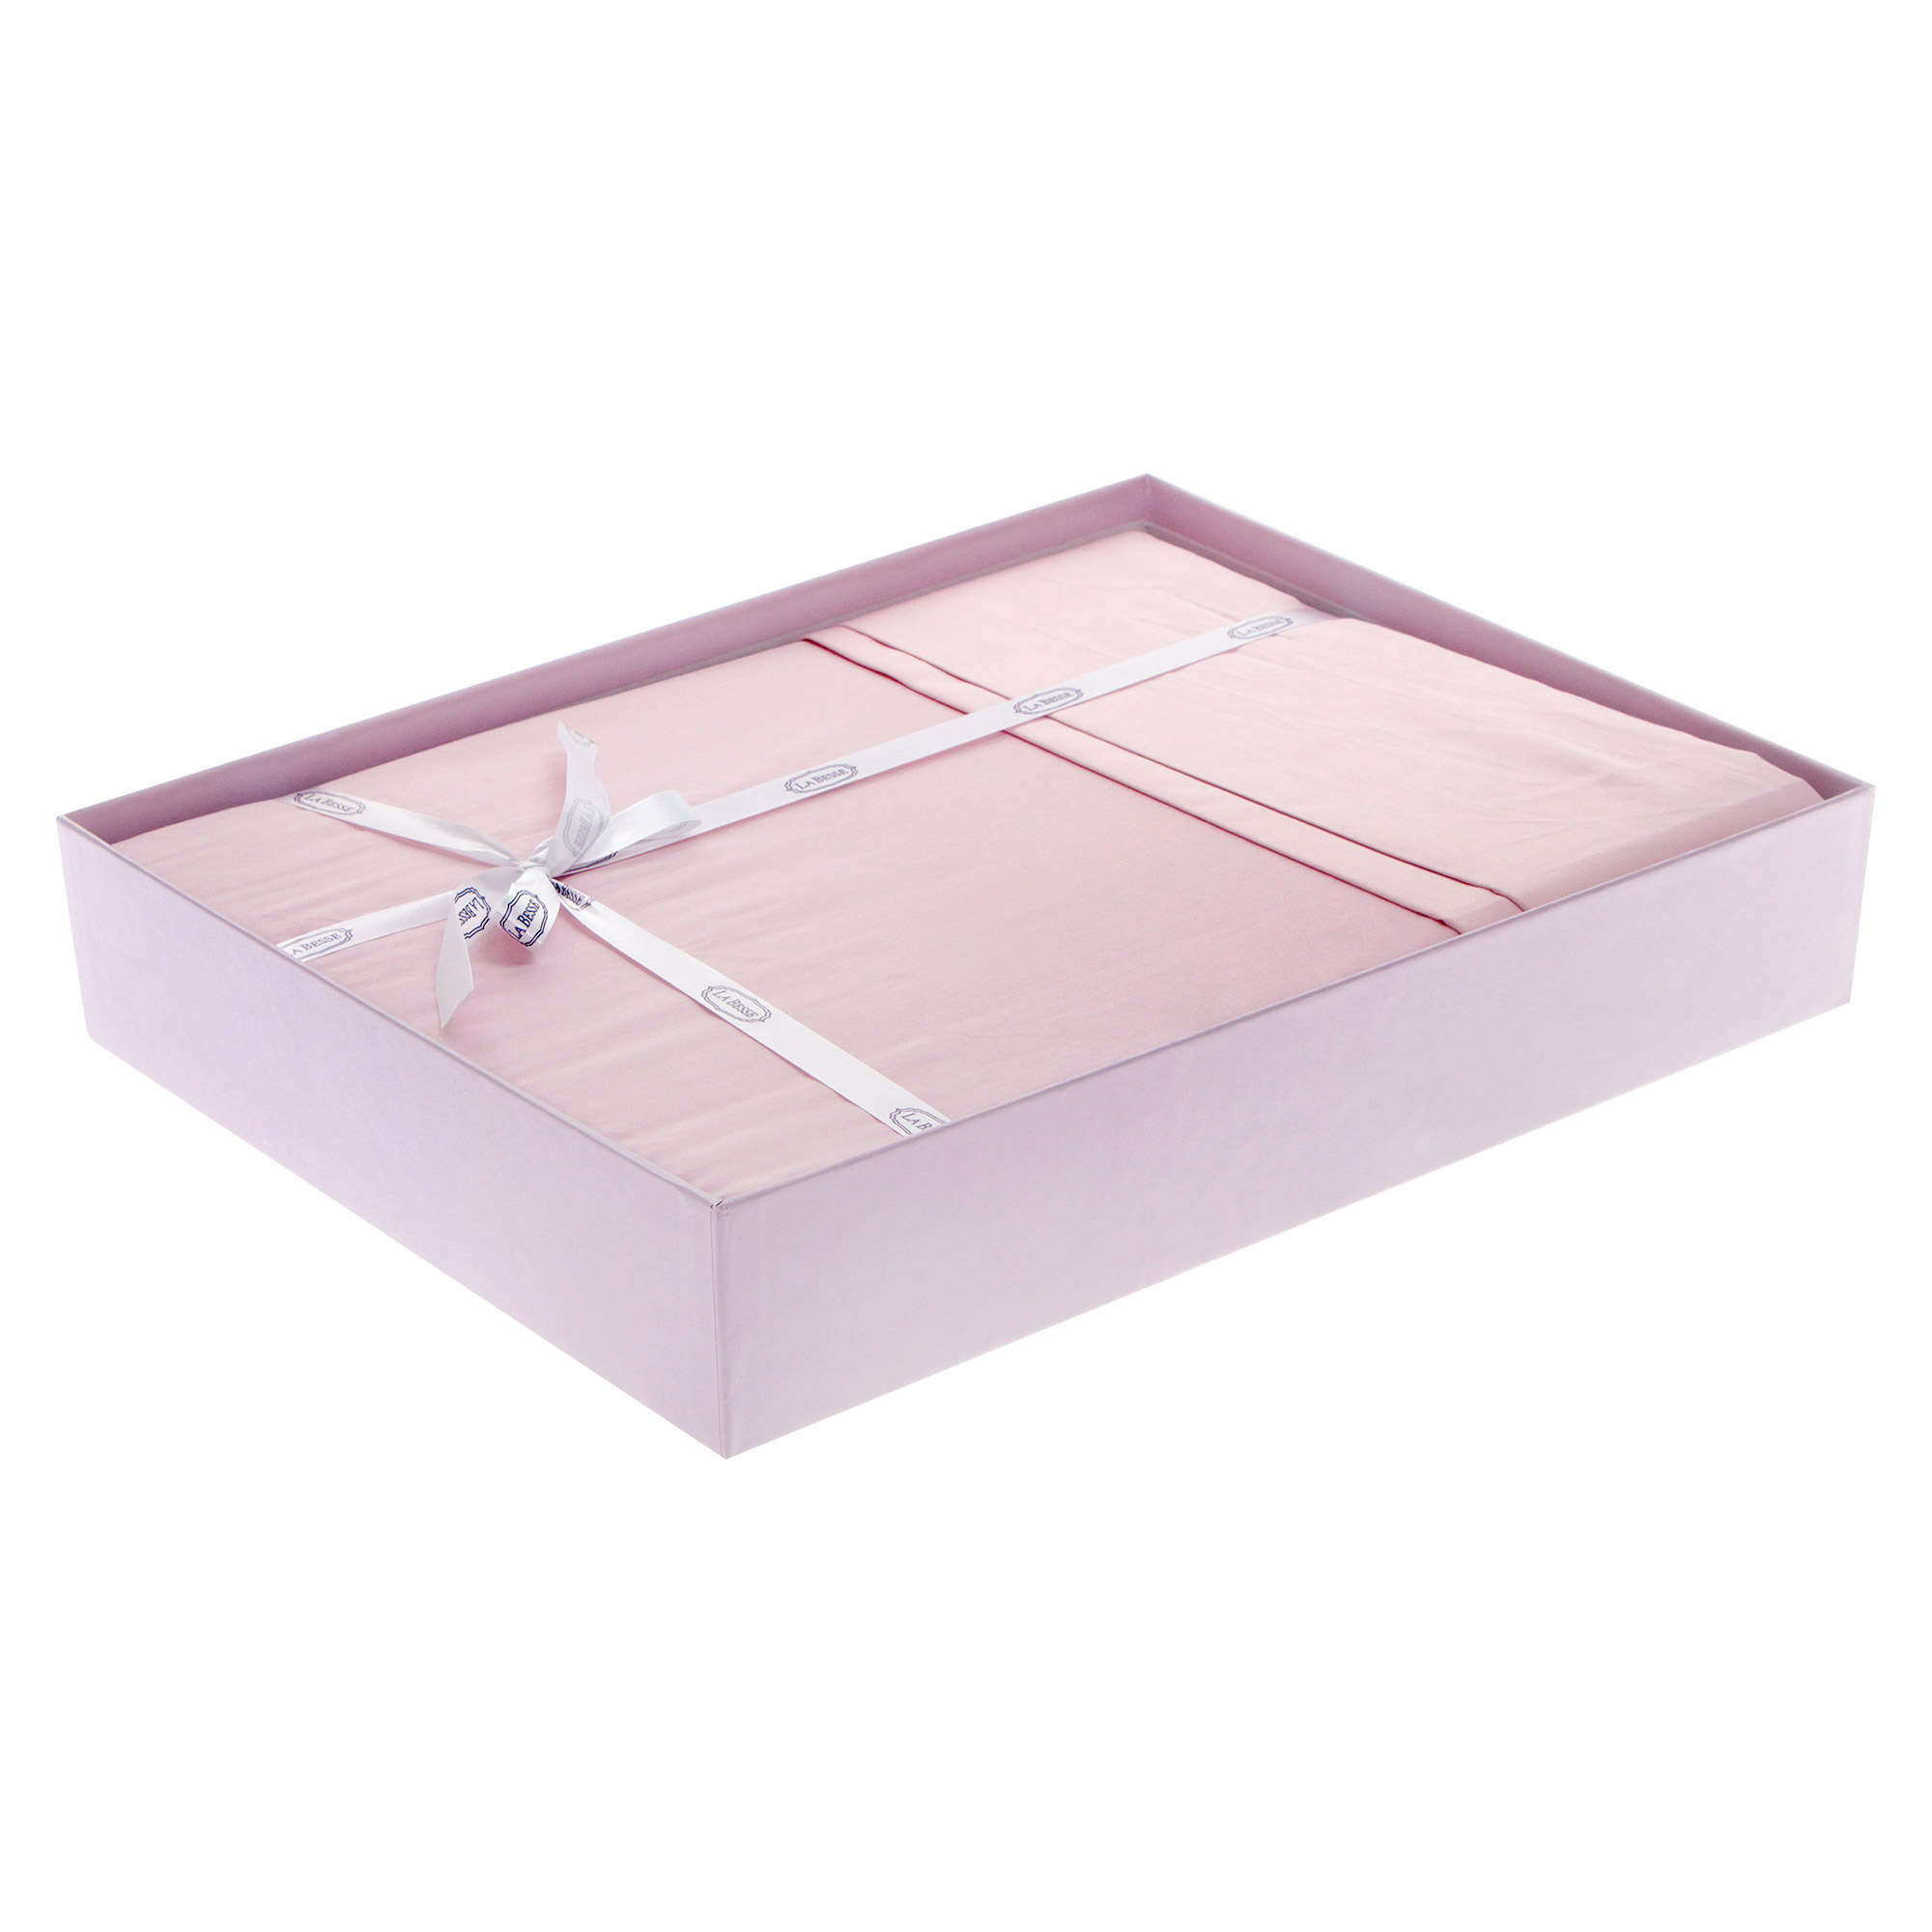 Комплект постельного белья La Besse Сатин розовый Кинг сайз, размер Кинг сайз - фото 2